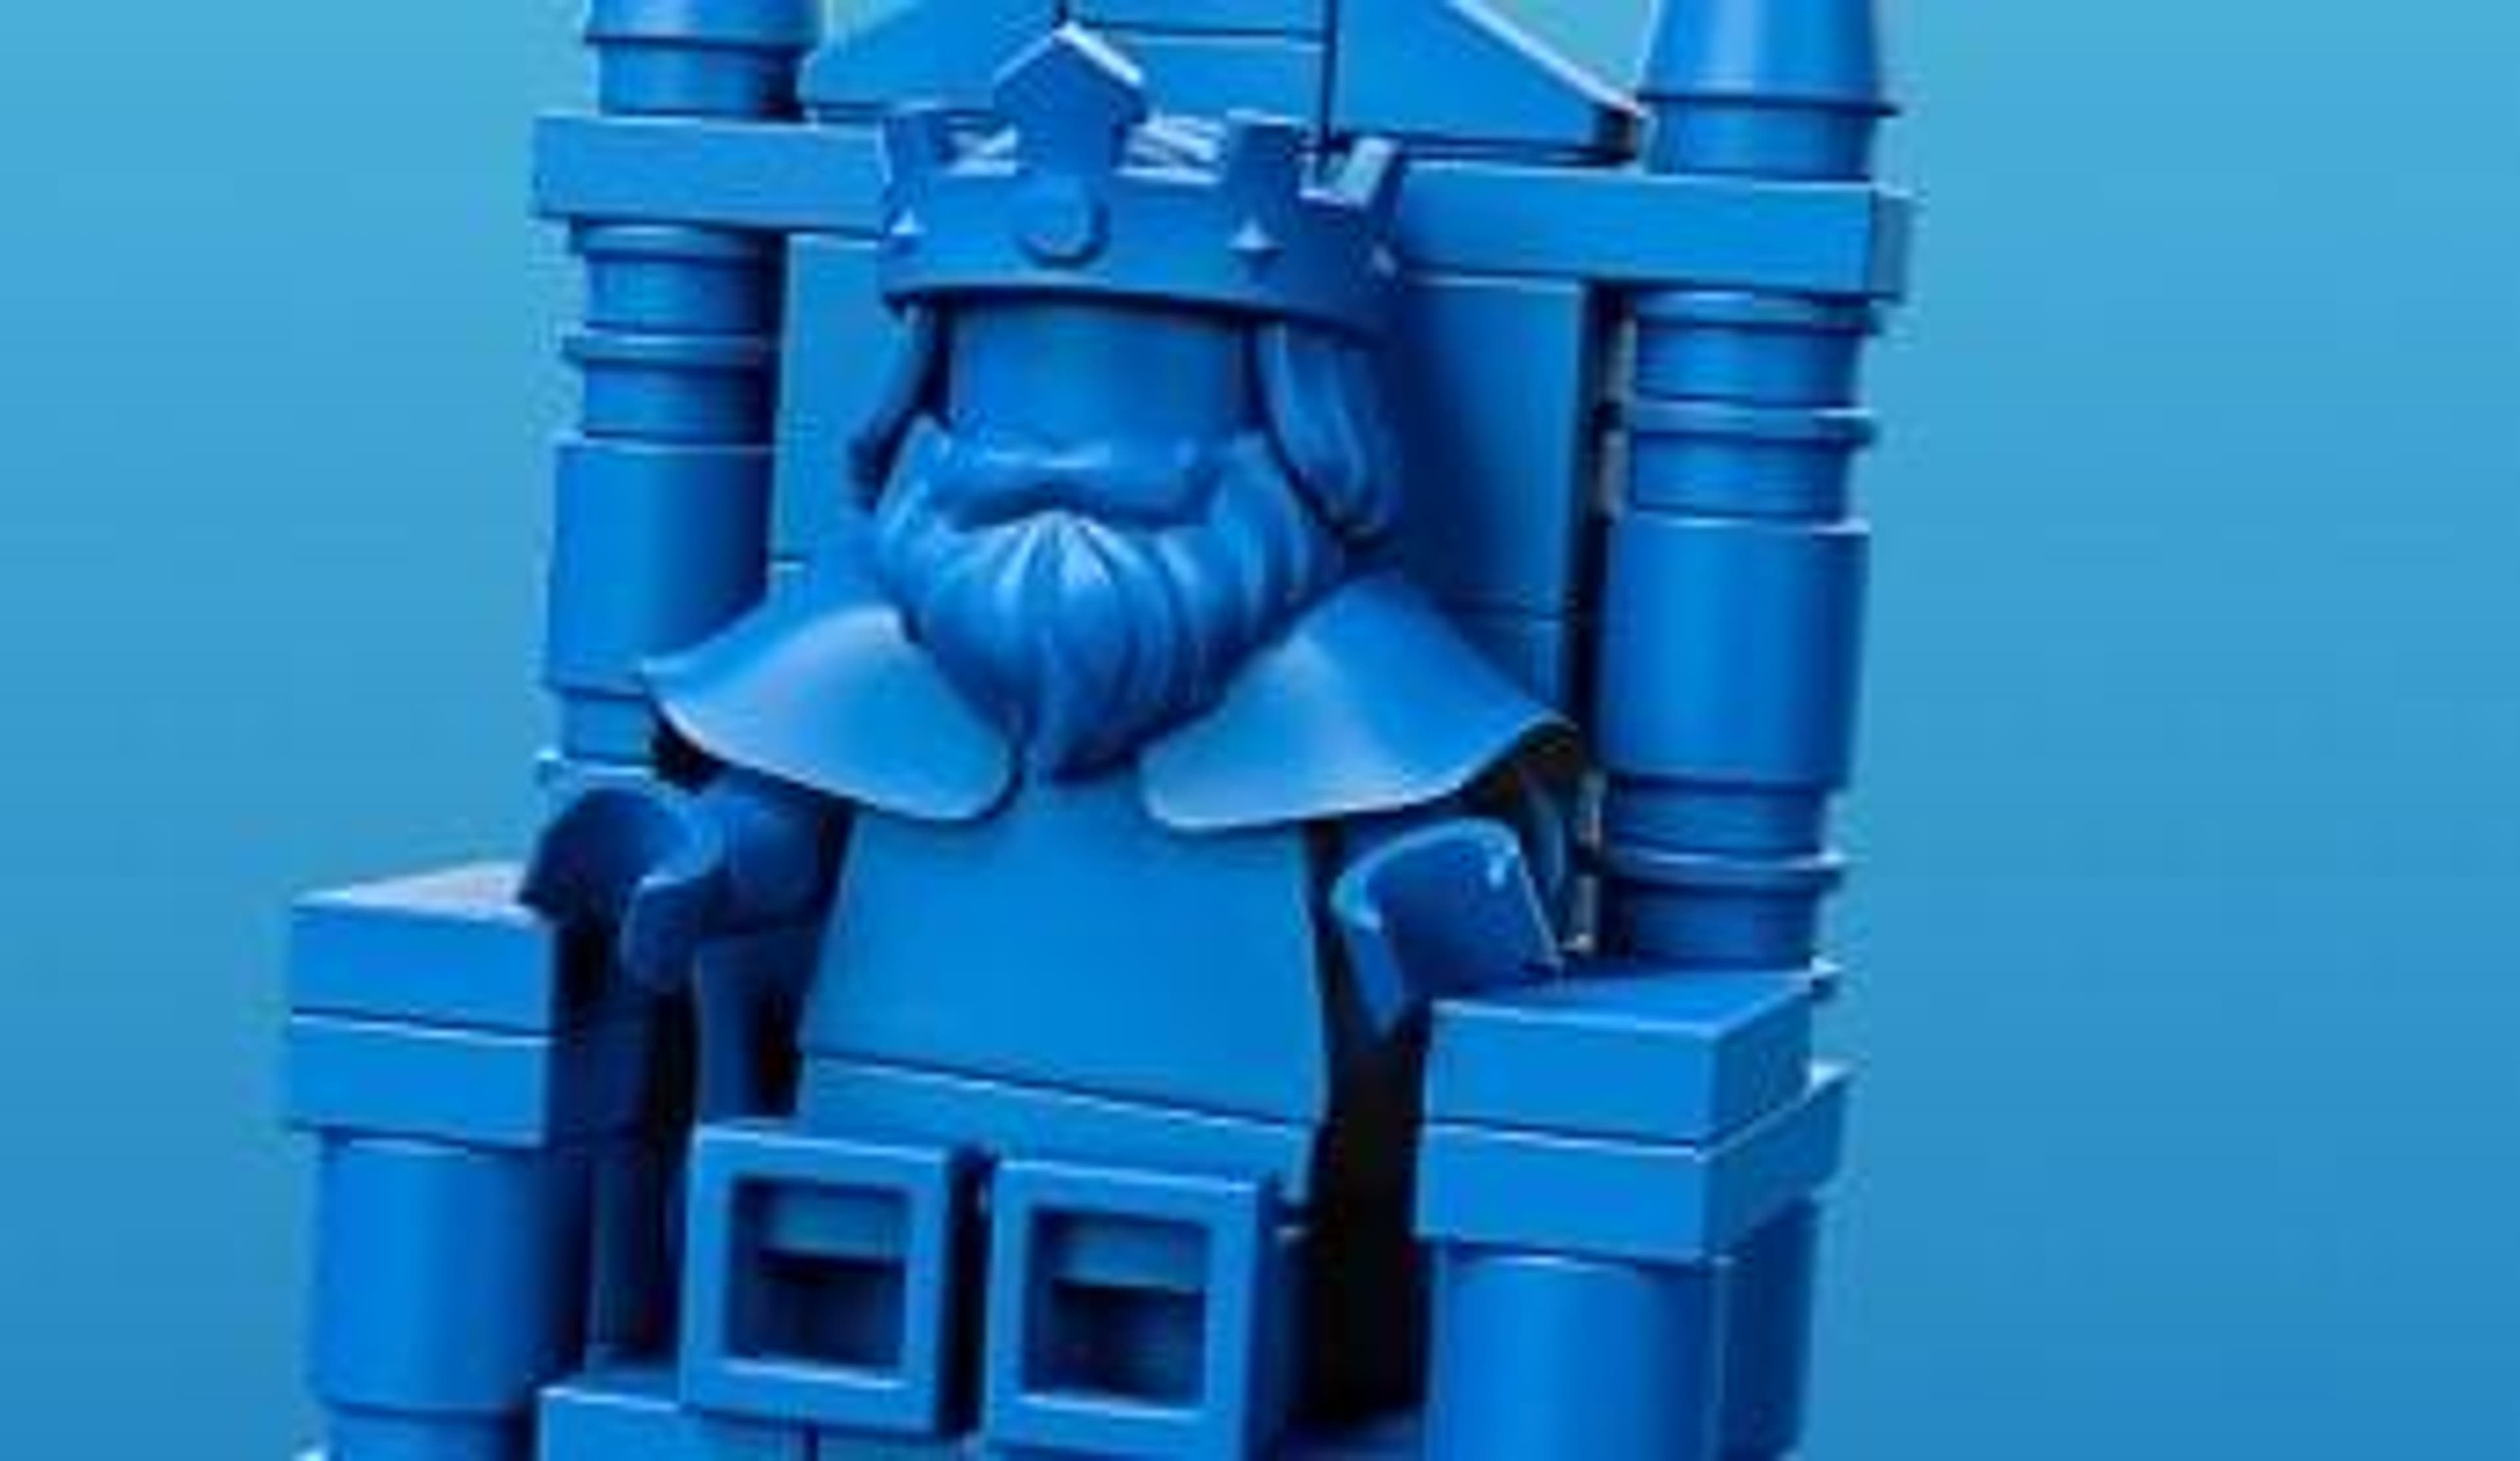  A Blue LEGO King Mini figure sitting on a blue throne 